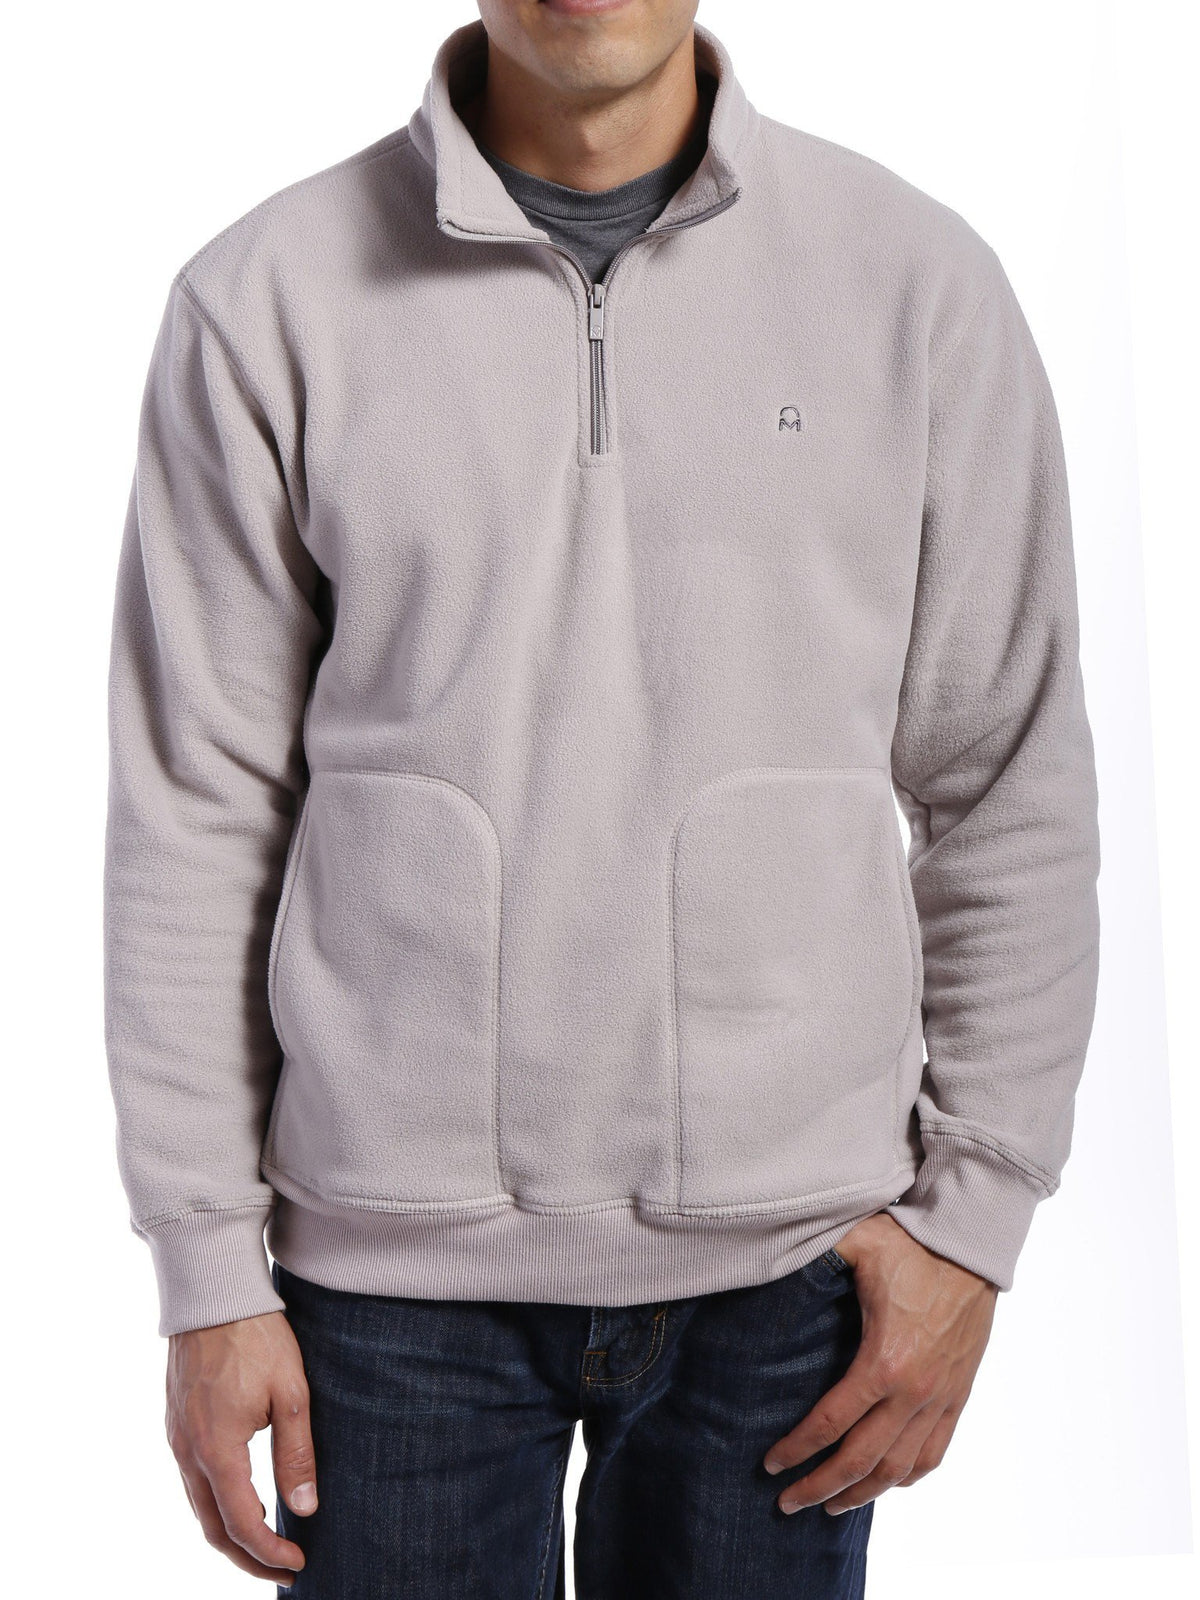 Men's Soft Fleece Half-Zip Pullover - Light Grey